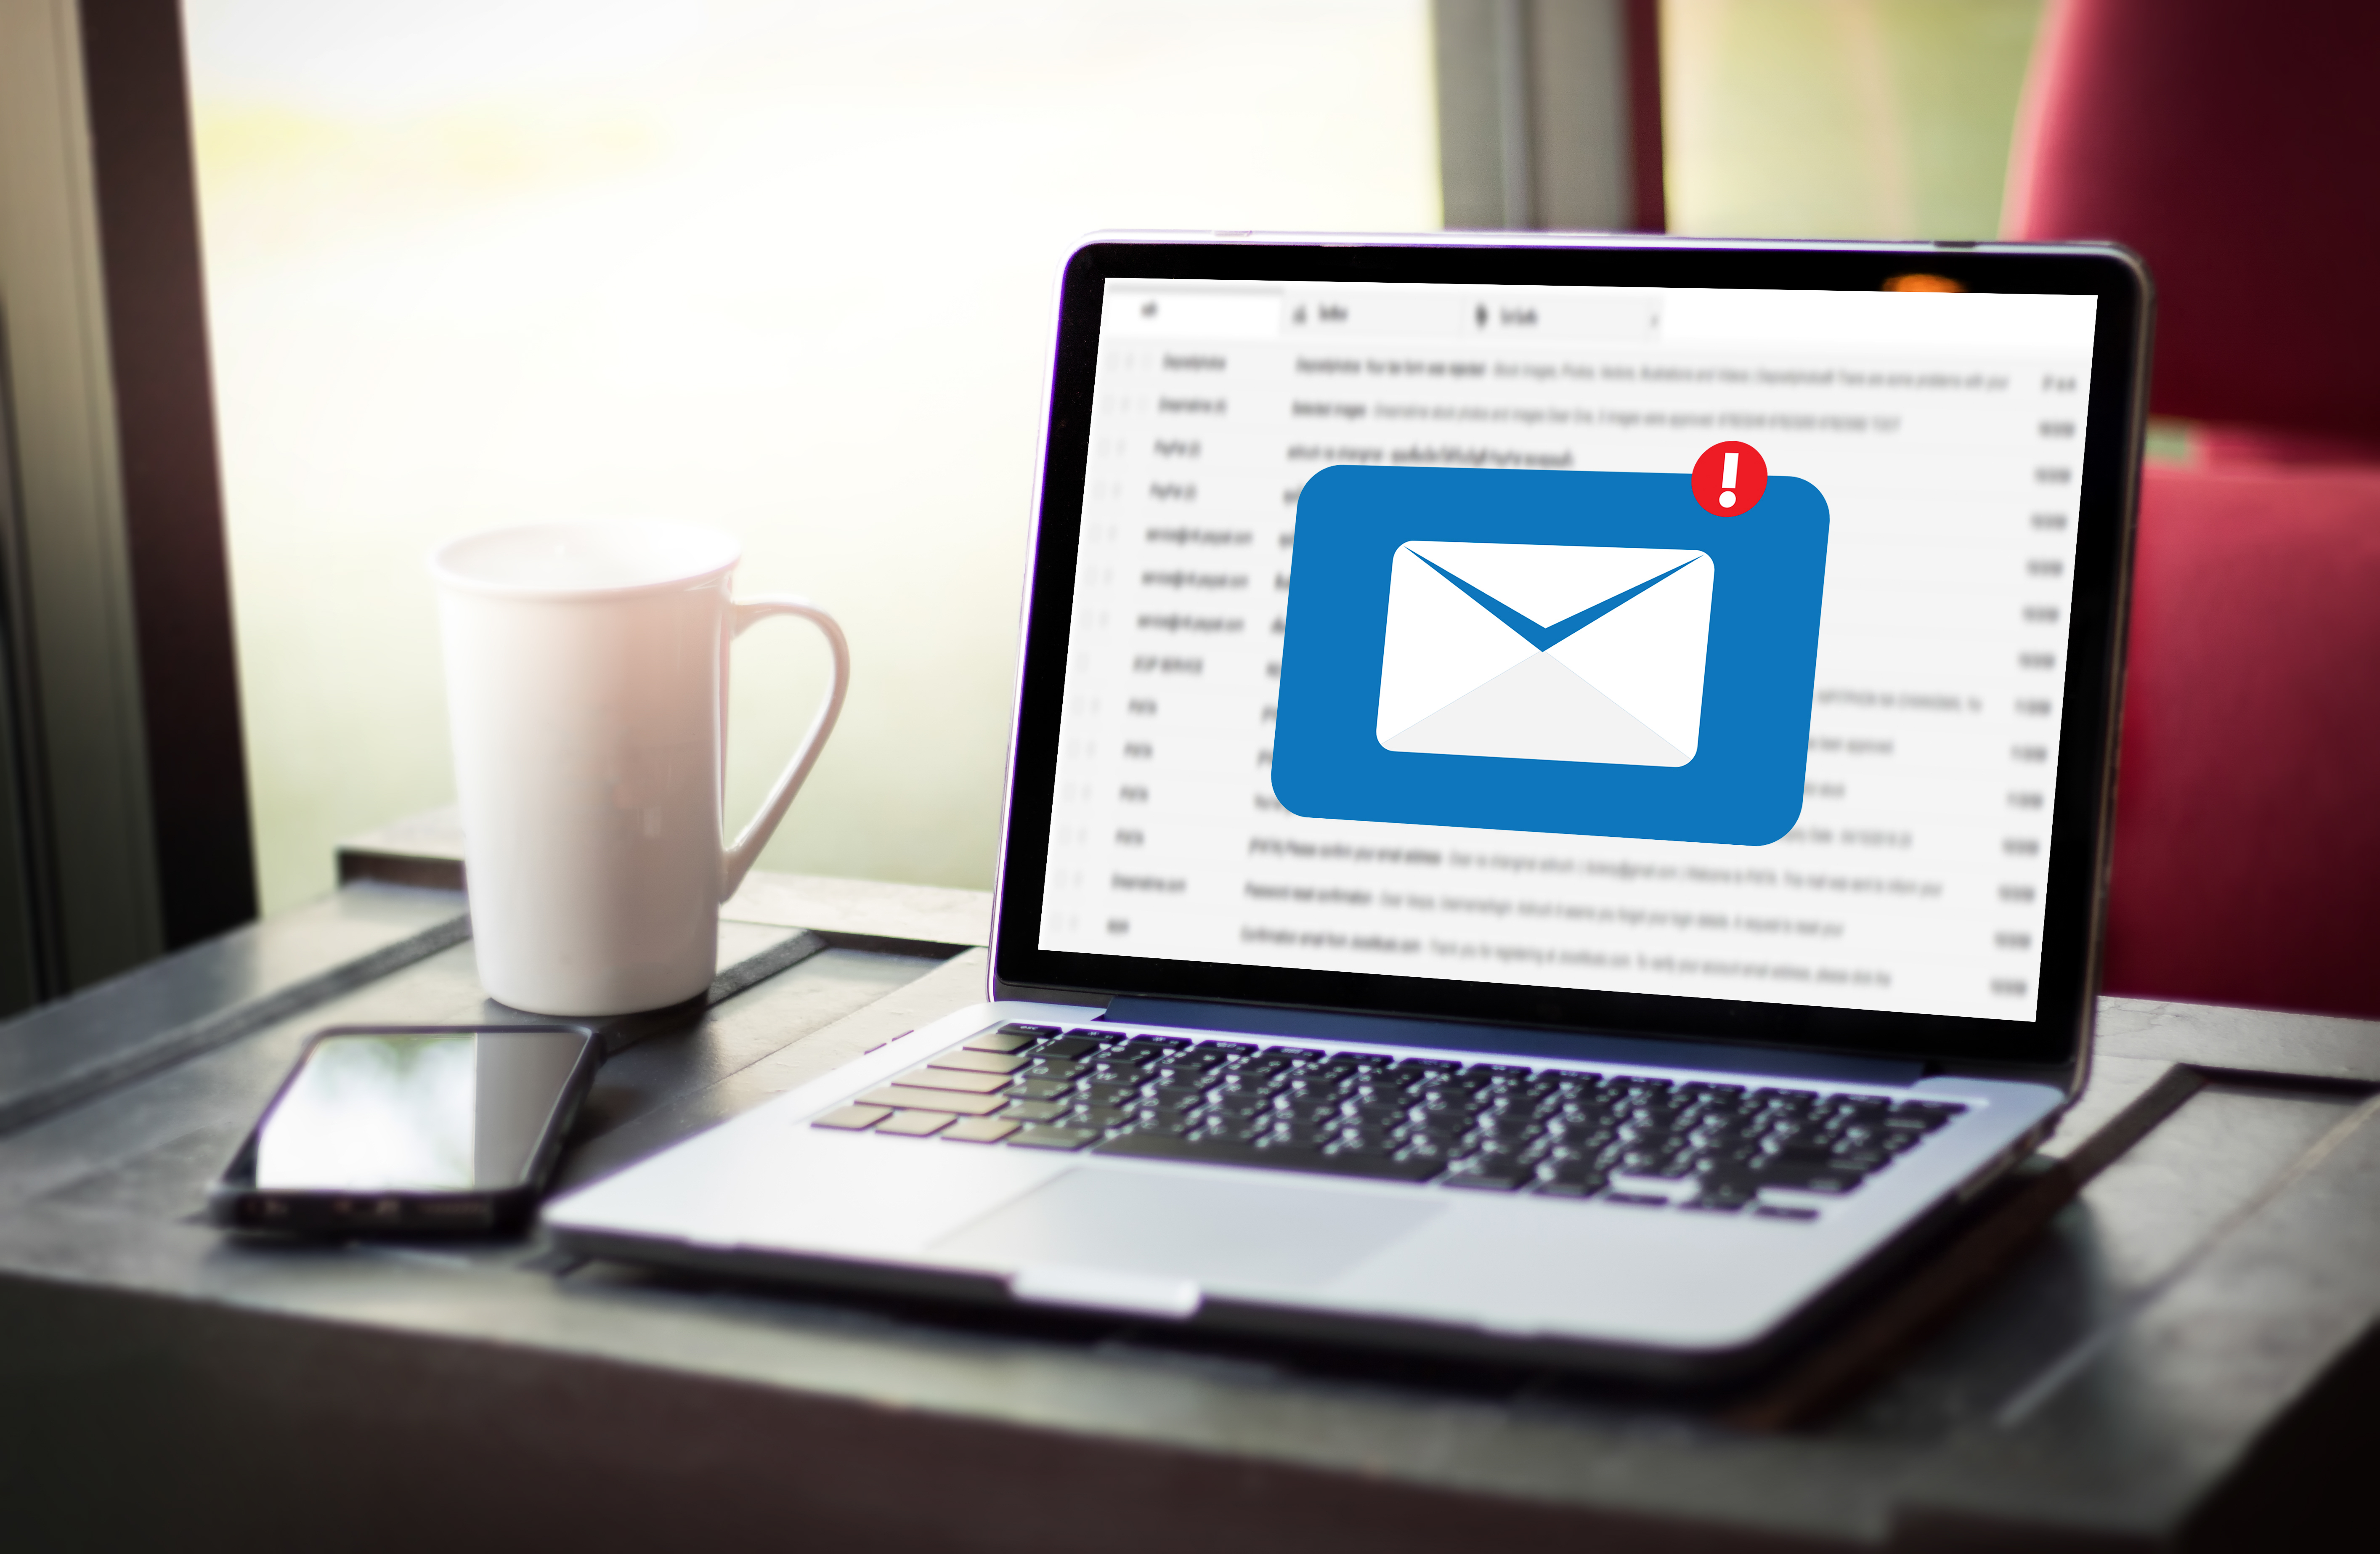 Effiziente E-Mail-Archivierung für mehr Produktivität